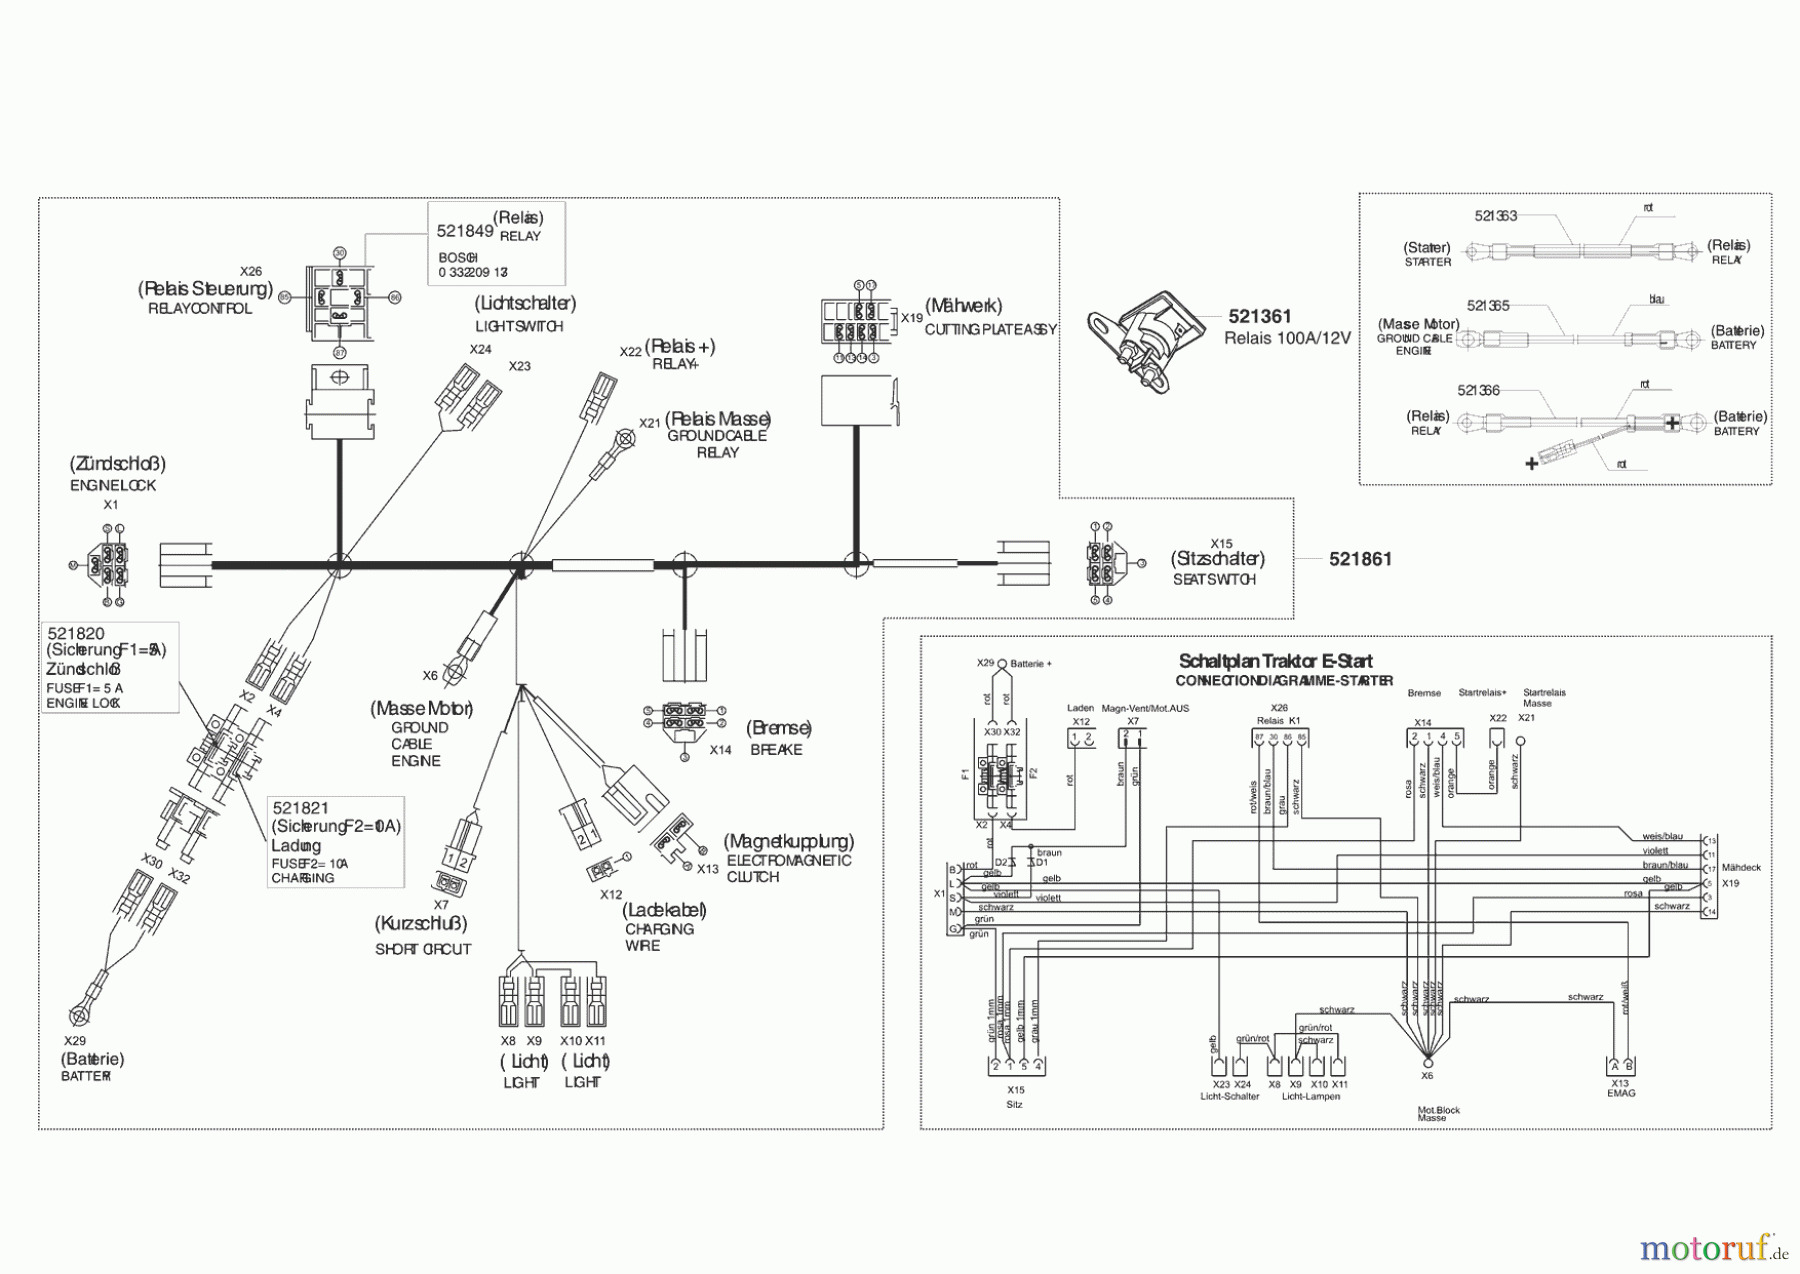  Powerline Gartentechnik Rasentraktor T 15-102 HDS ab 04/2004 Seite 7